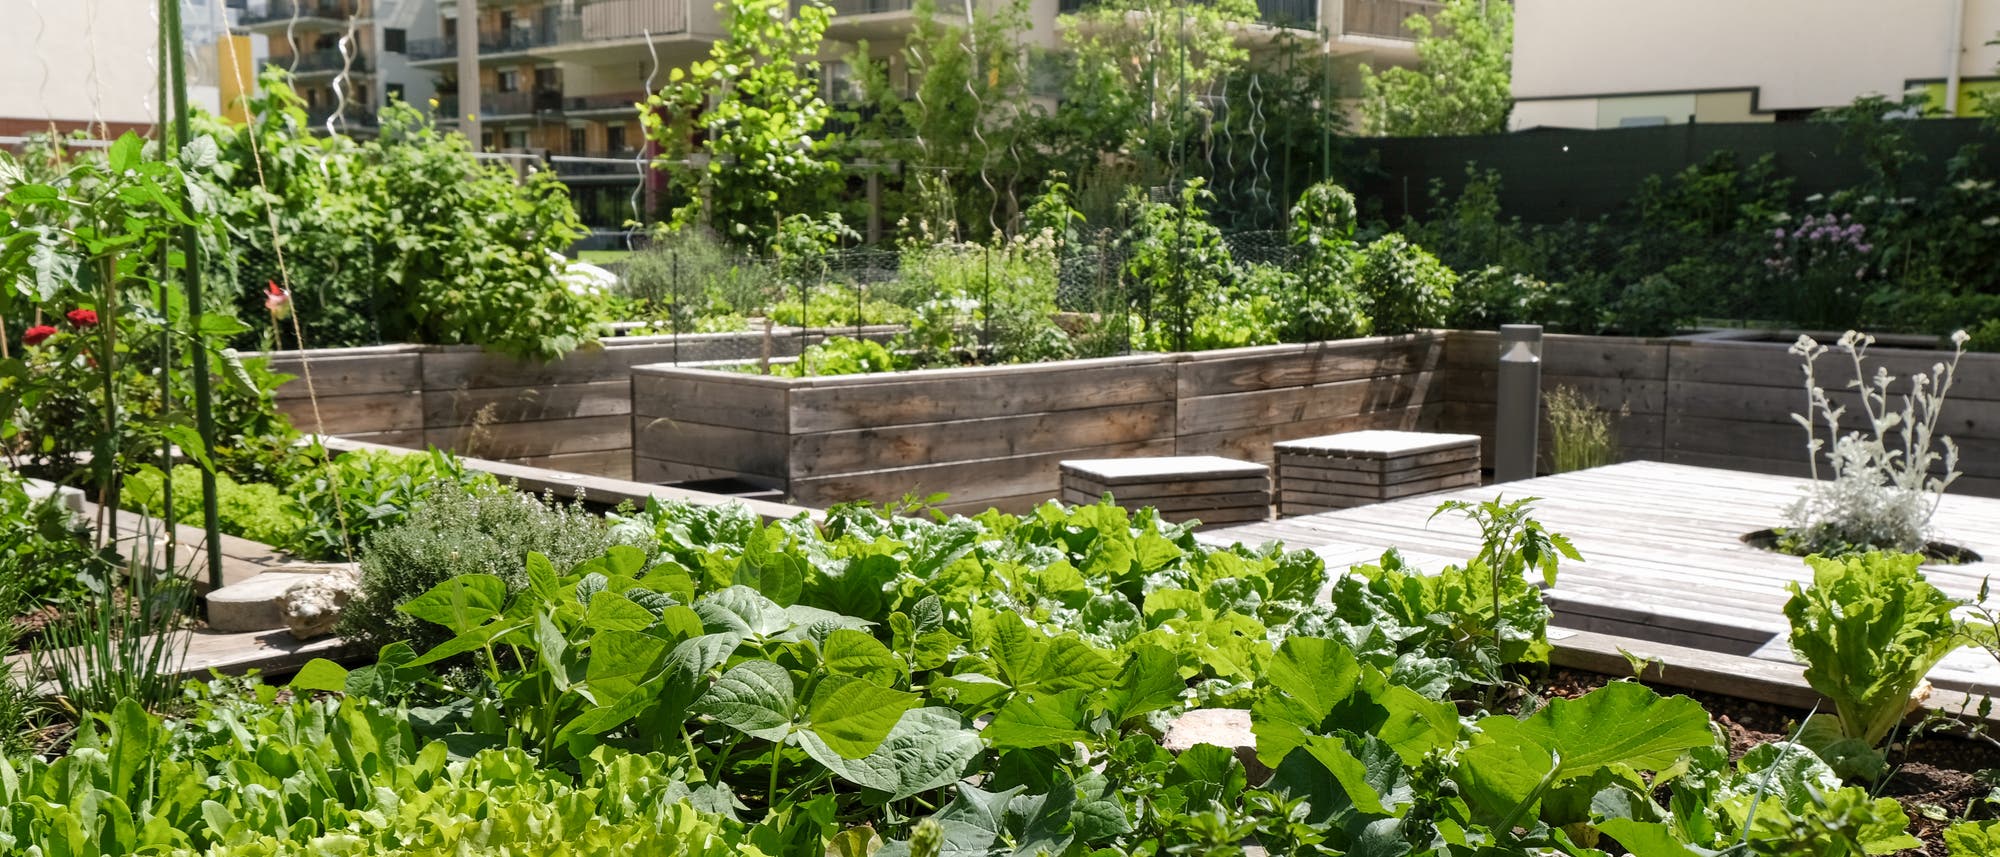 Gemüse in einem städtischen Gemeinschaftsgarten.